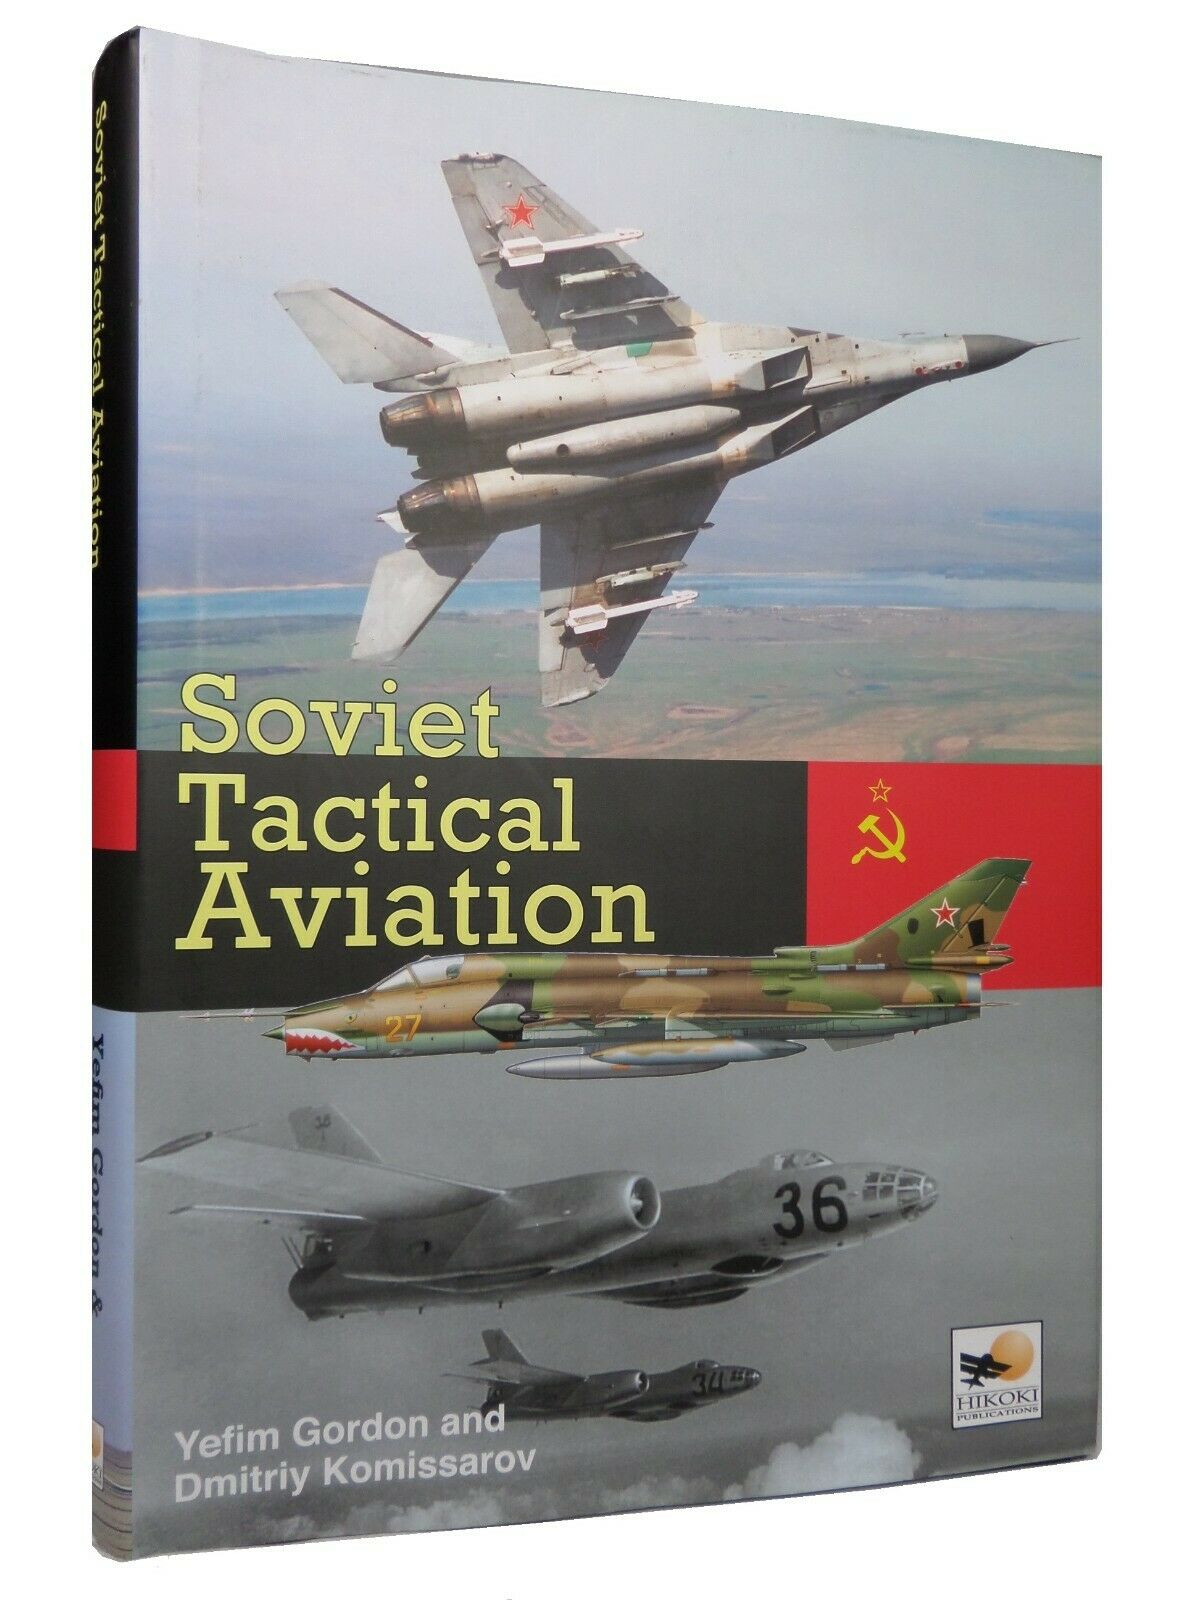 SOVIET TACTICAL AVIATION BY YEFIM GORDON & DMITRIY KOMISSAROV 2011 FIRST EDITION